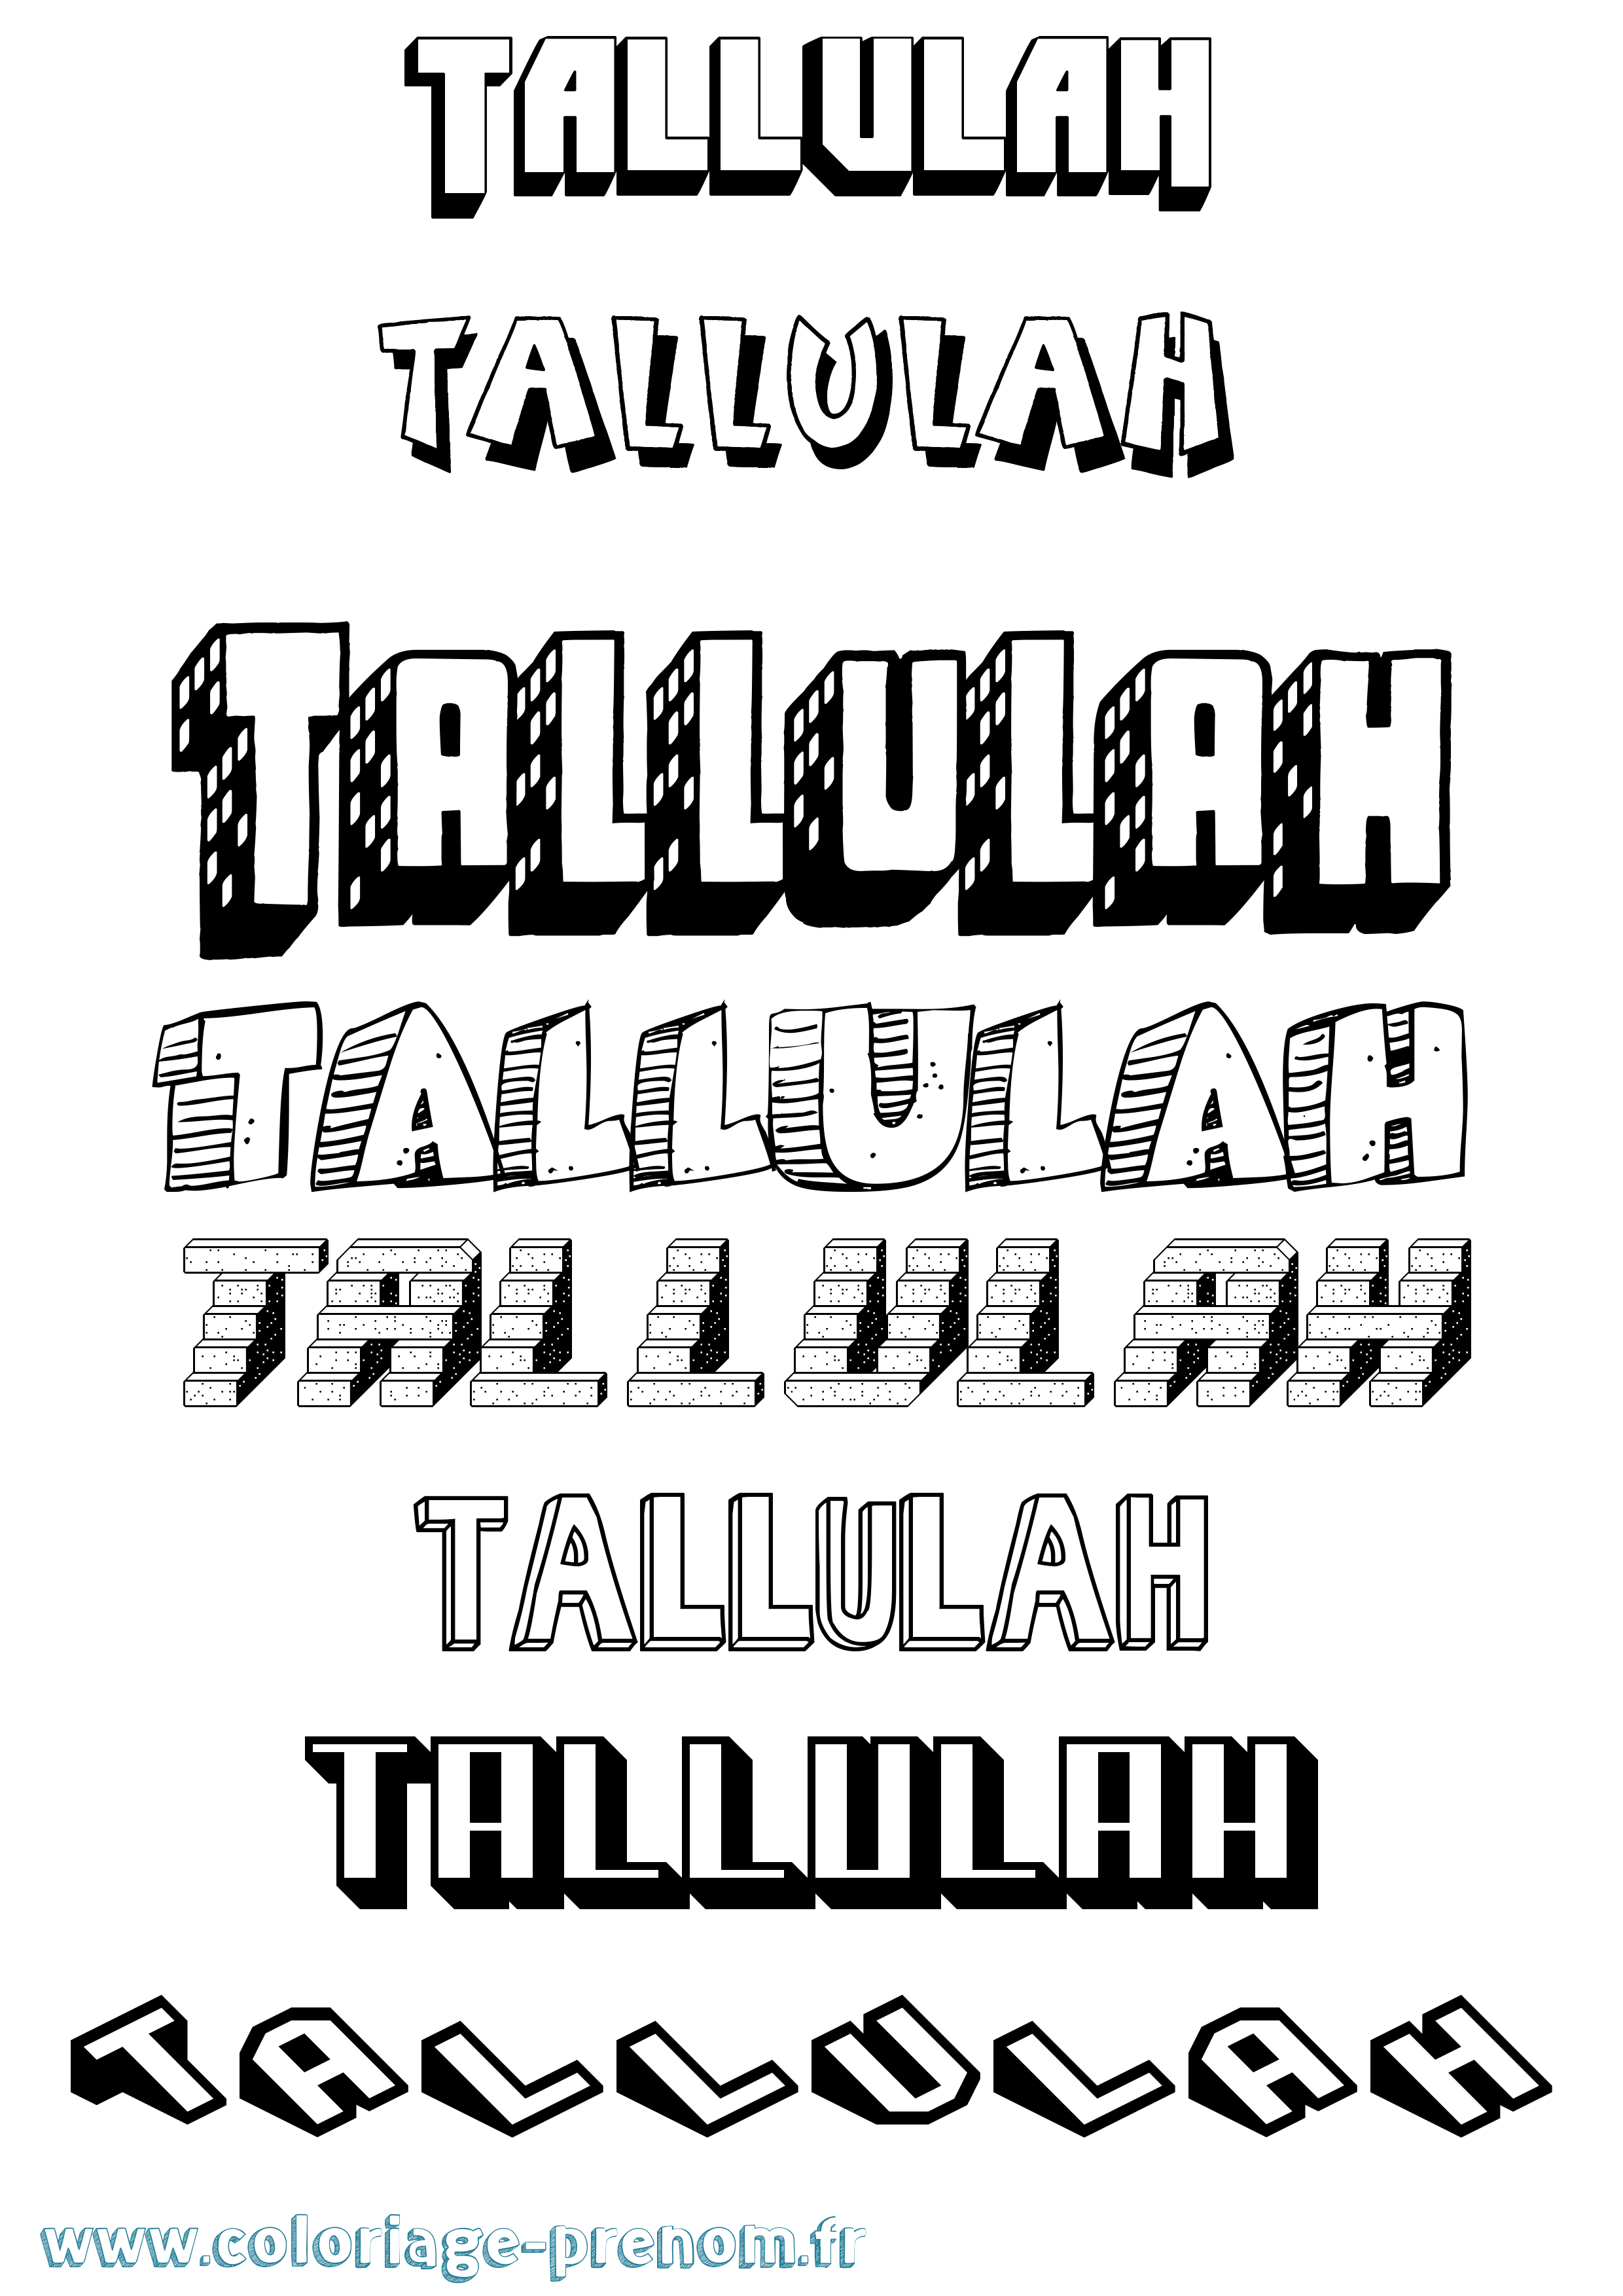 Coloriage prénom Tallulah Effet 3D